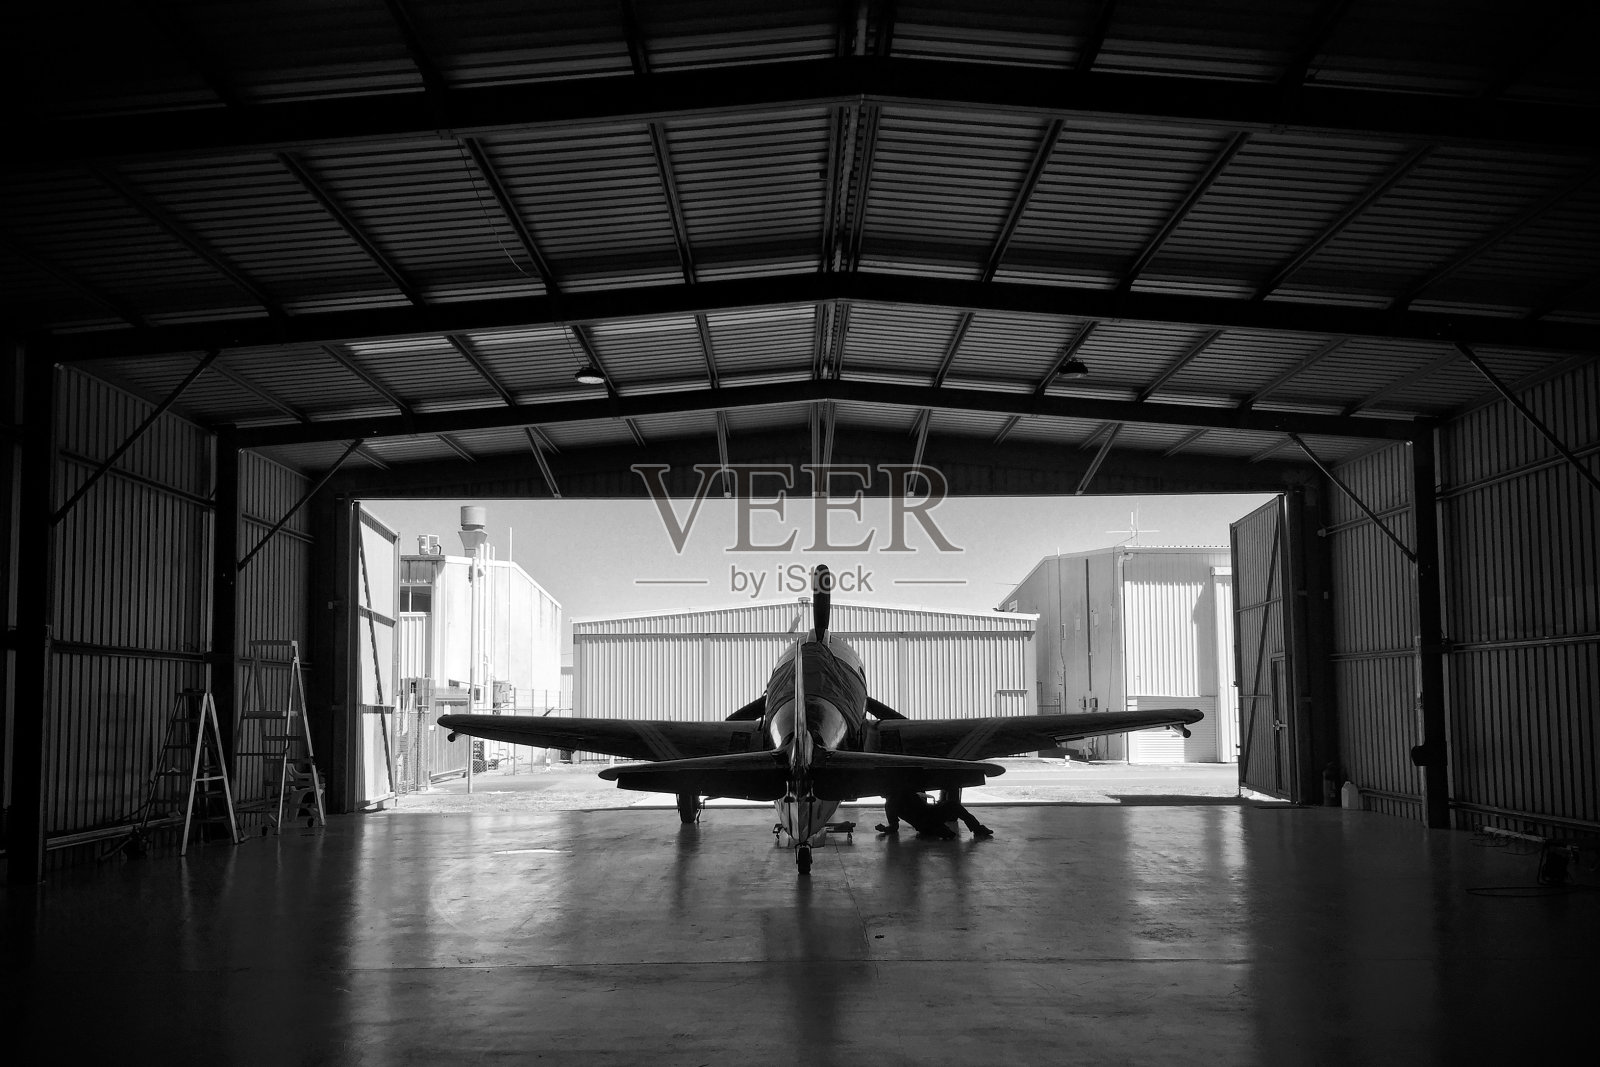 机库中P-51野马战斗机的剪影照片摄影图片